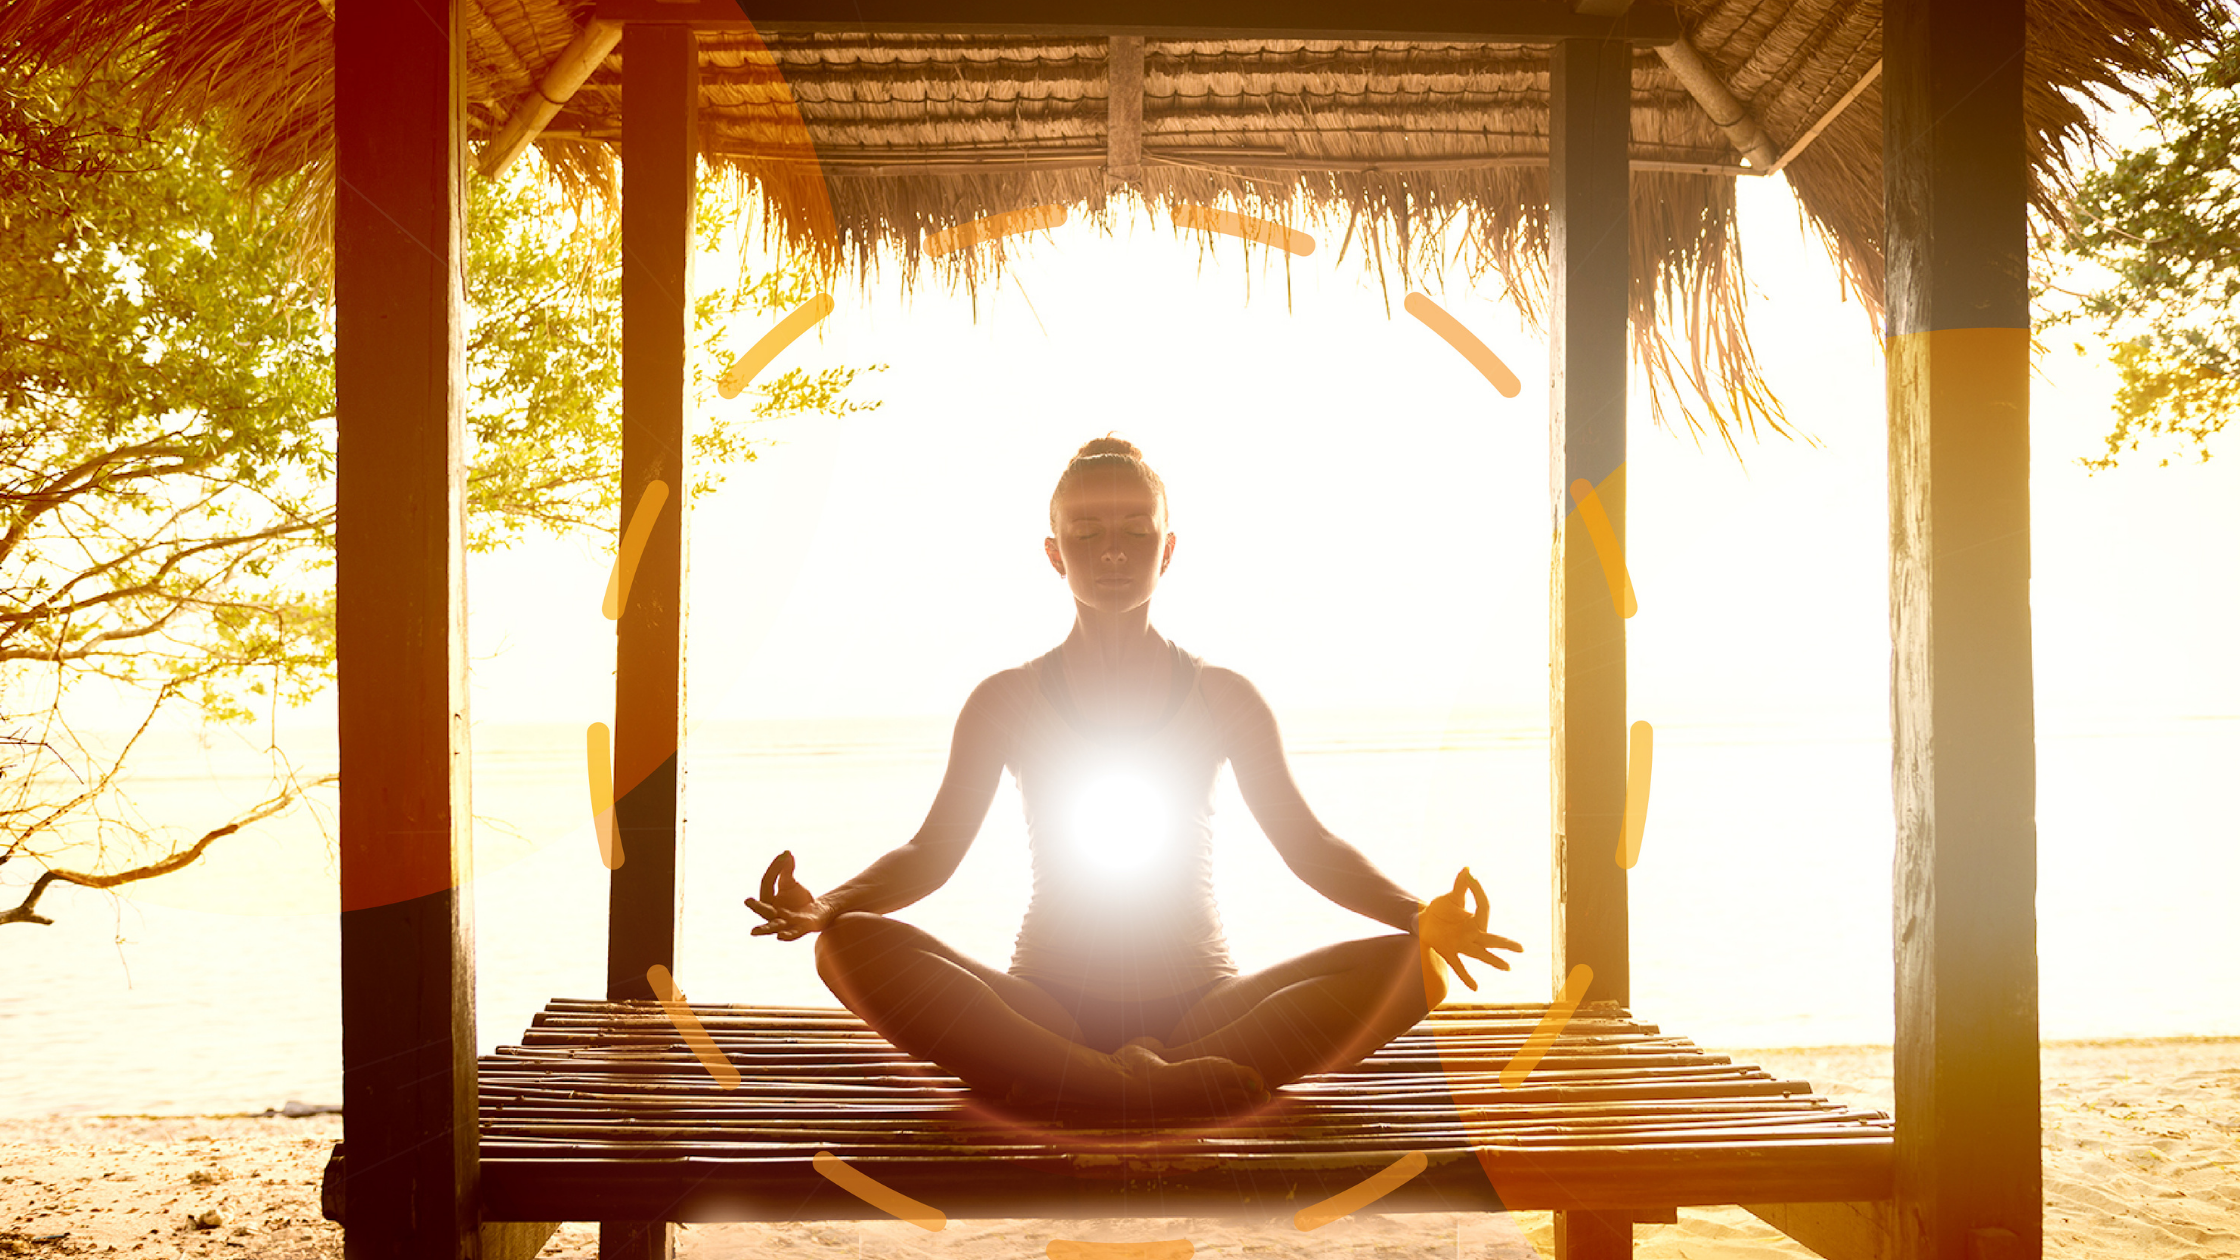 Медитация расслабления со словами. Прана йога садхана. Медитация. Медитация и релаксация. Медитация в тропиках.